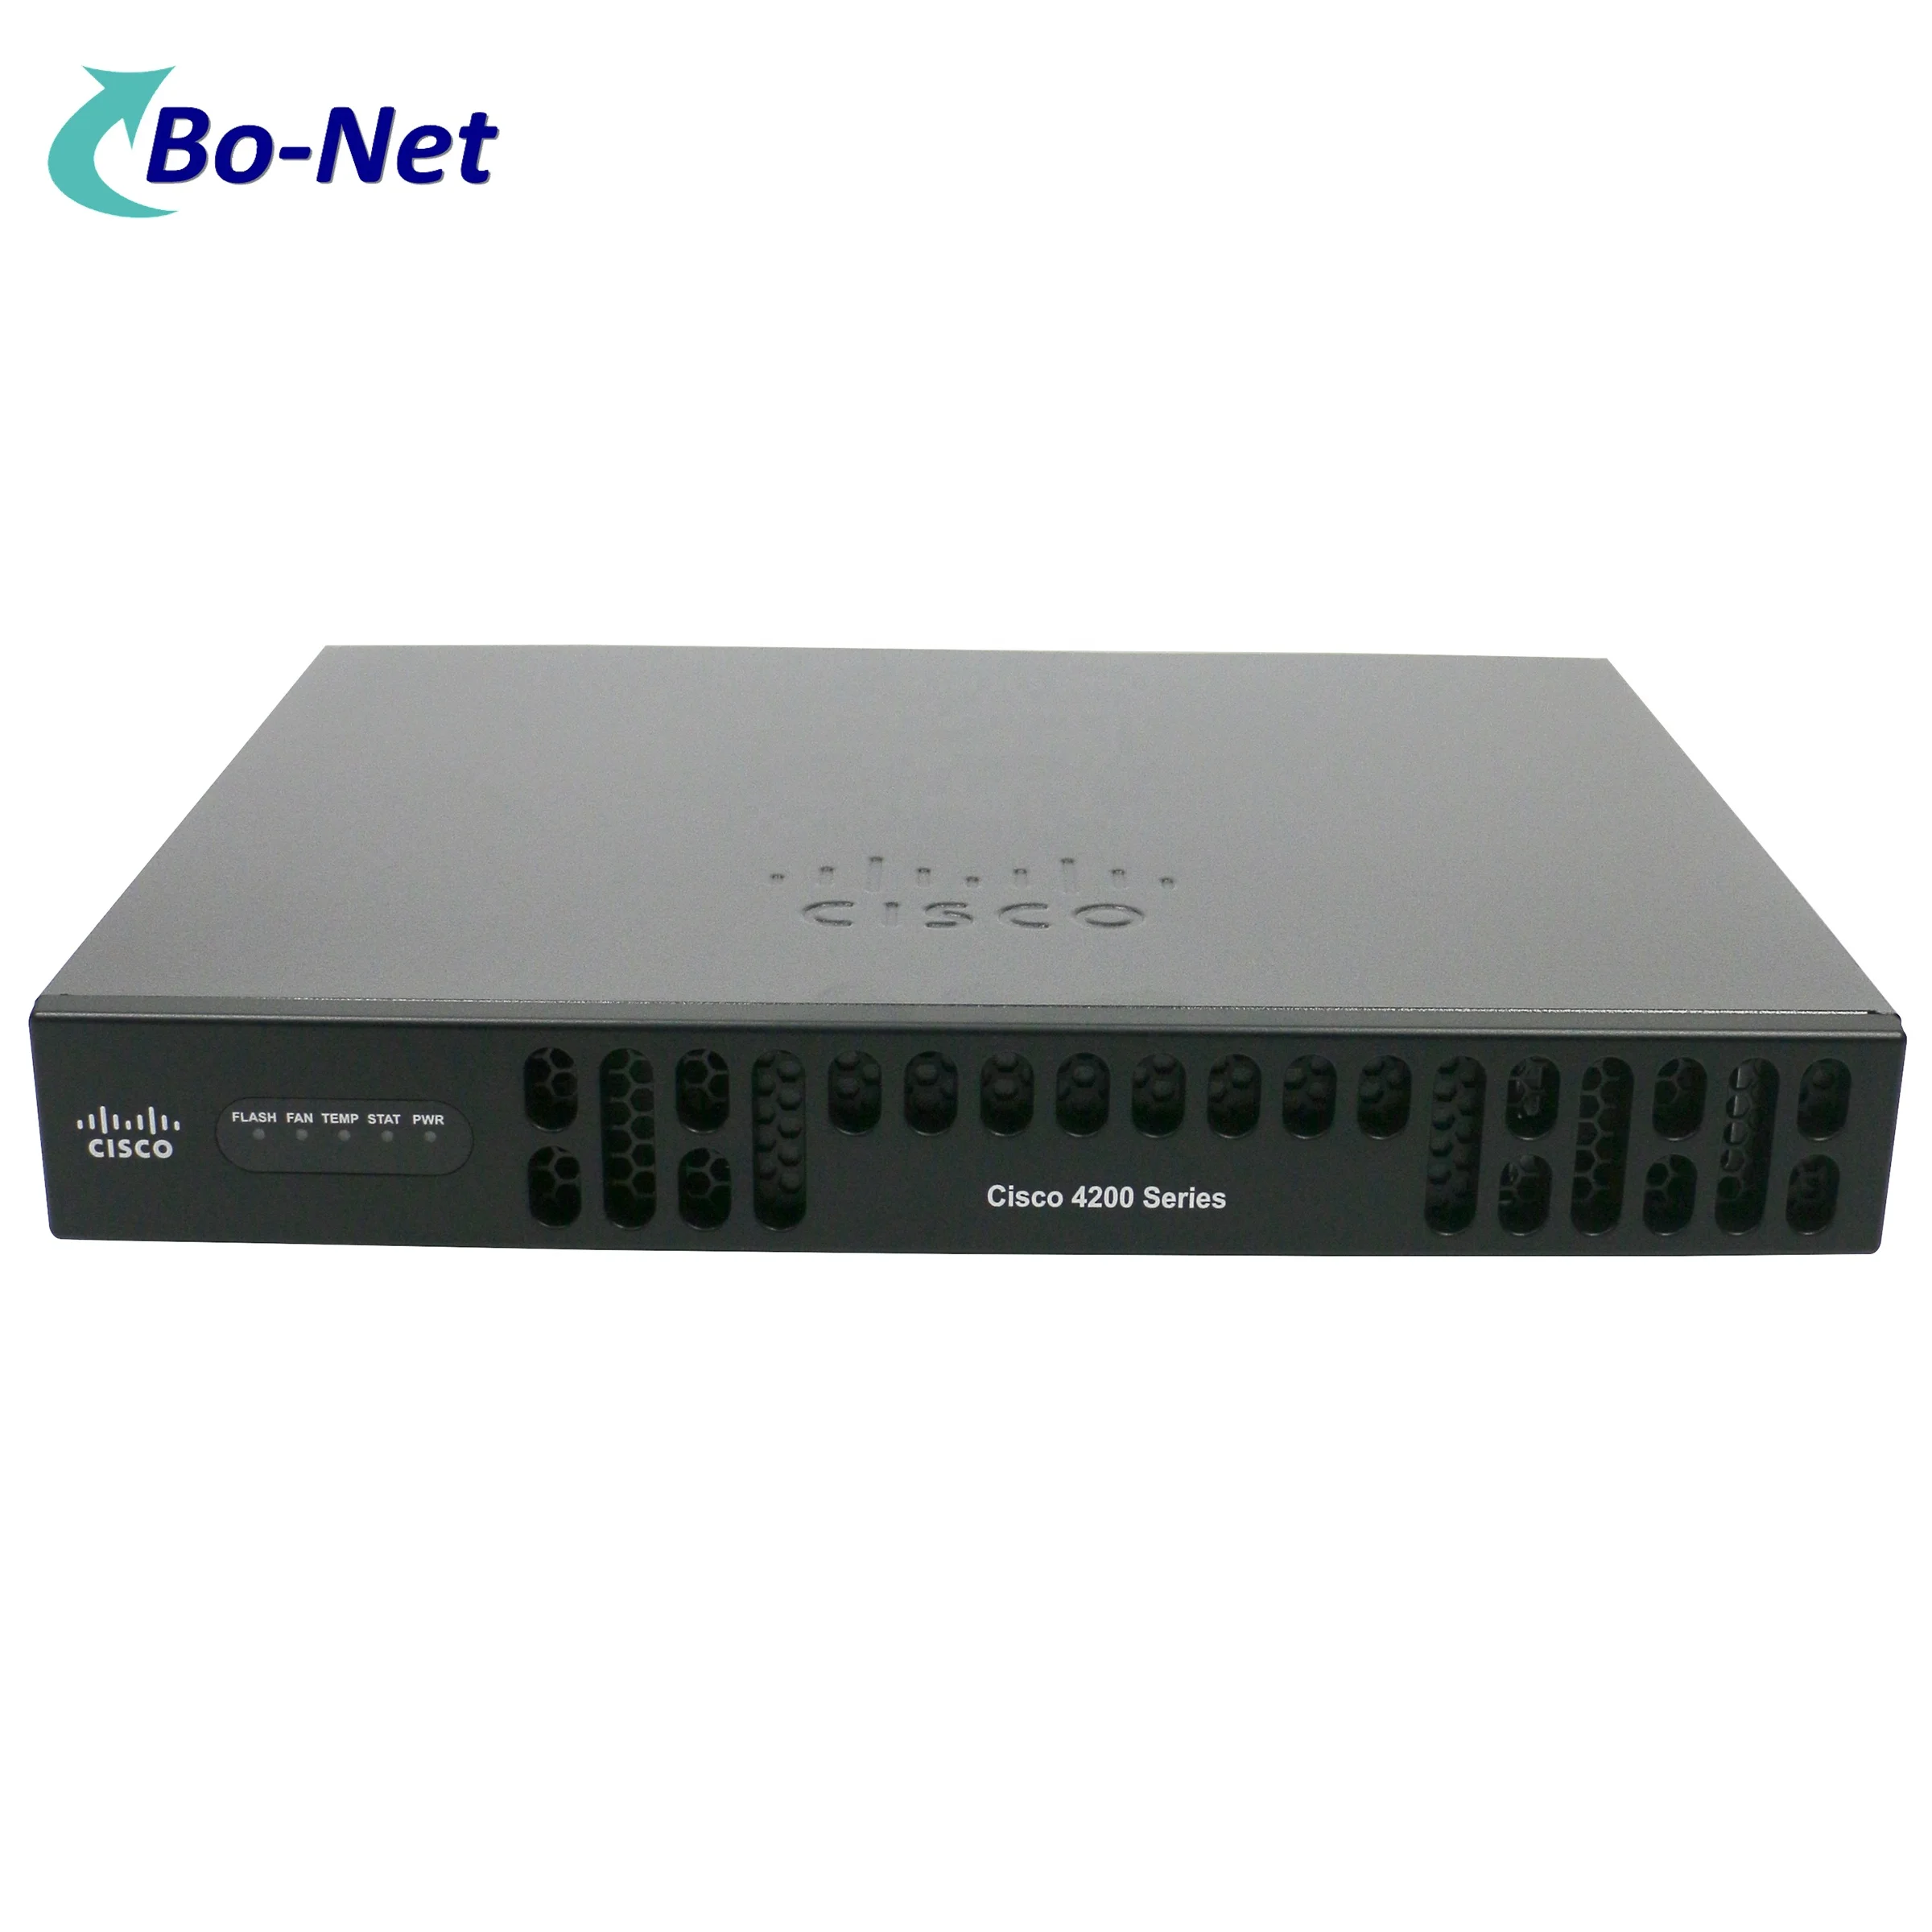 

Original ISR4221-SEC/K9 VPN Router 4200 Series Routers Gigabit Integrated Services Enterprise Router